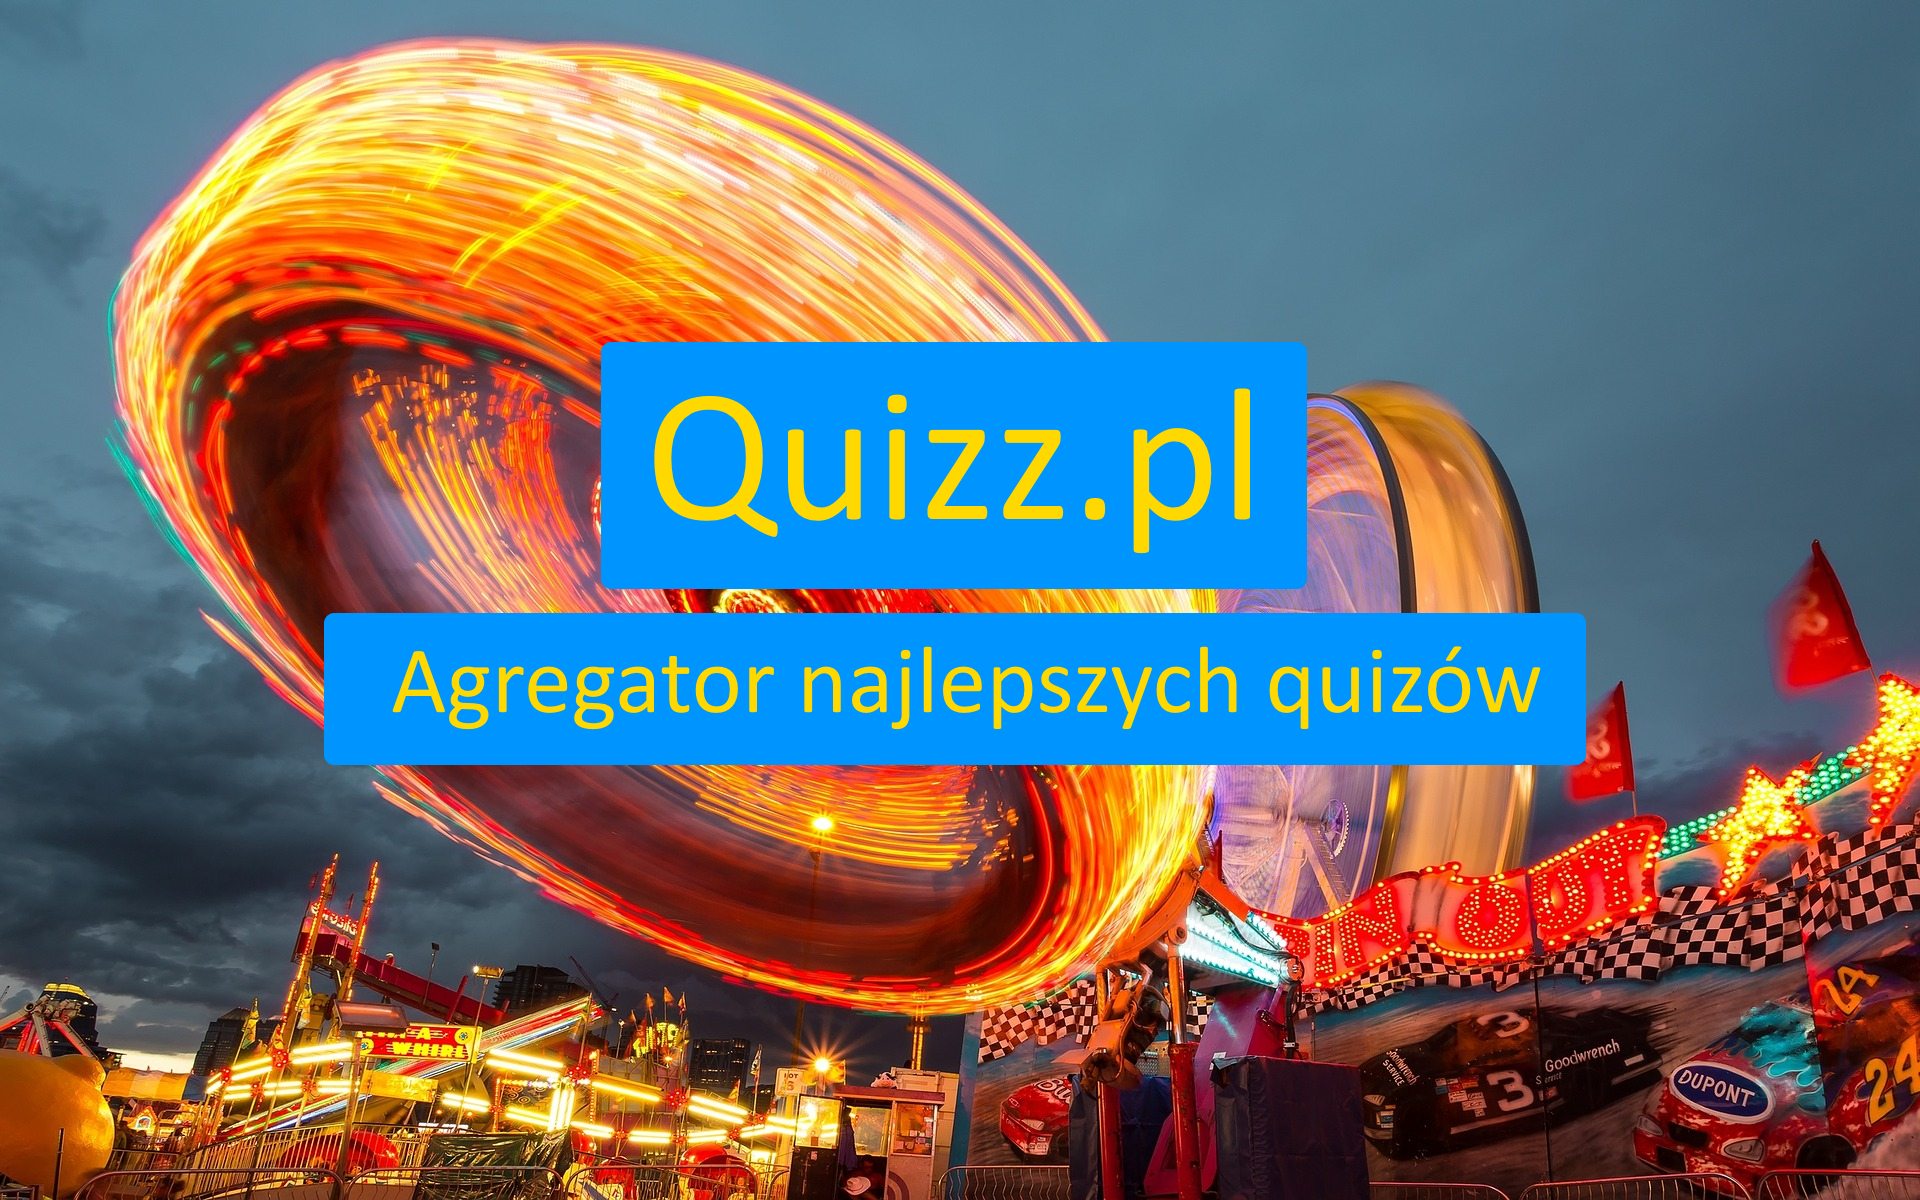 Połówka - bezpłatne quizy, testy wiedzy i ankiety - www.quizz.pl